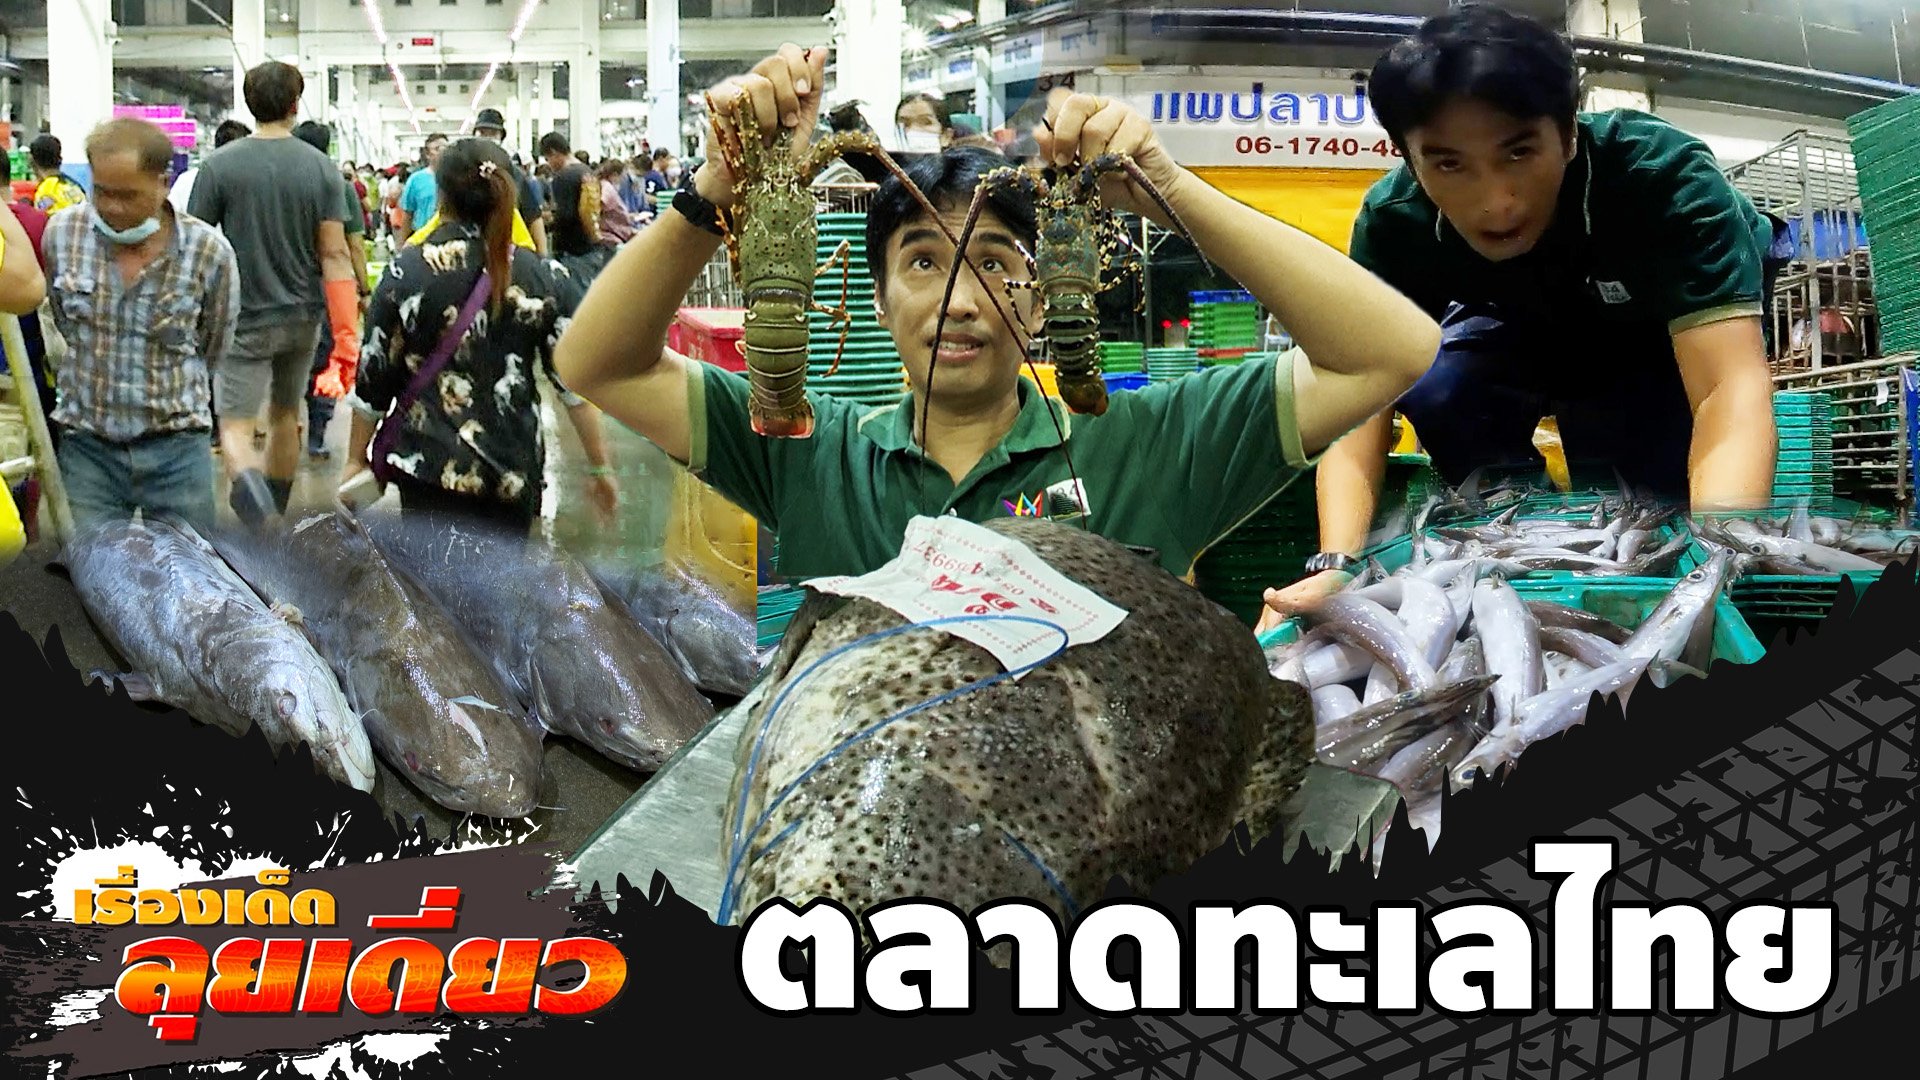 เรื่องเด็ดลุยเดี่ยว | ที่สุดตลาดปลาอาเซียน "ตลาดทะเลไทย" จ.สมุทรสาคร | ข่าวเที่ยงอมรินทร์ | 30 ก.ค. 66 | AMARIN TVHD34